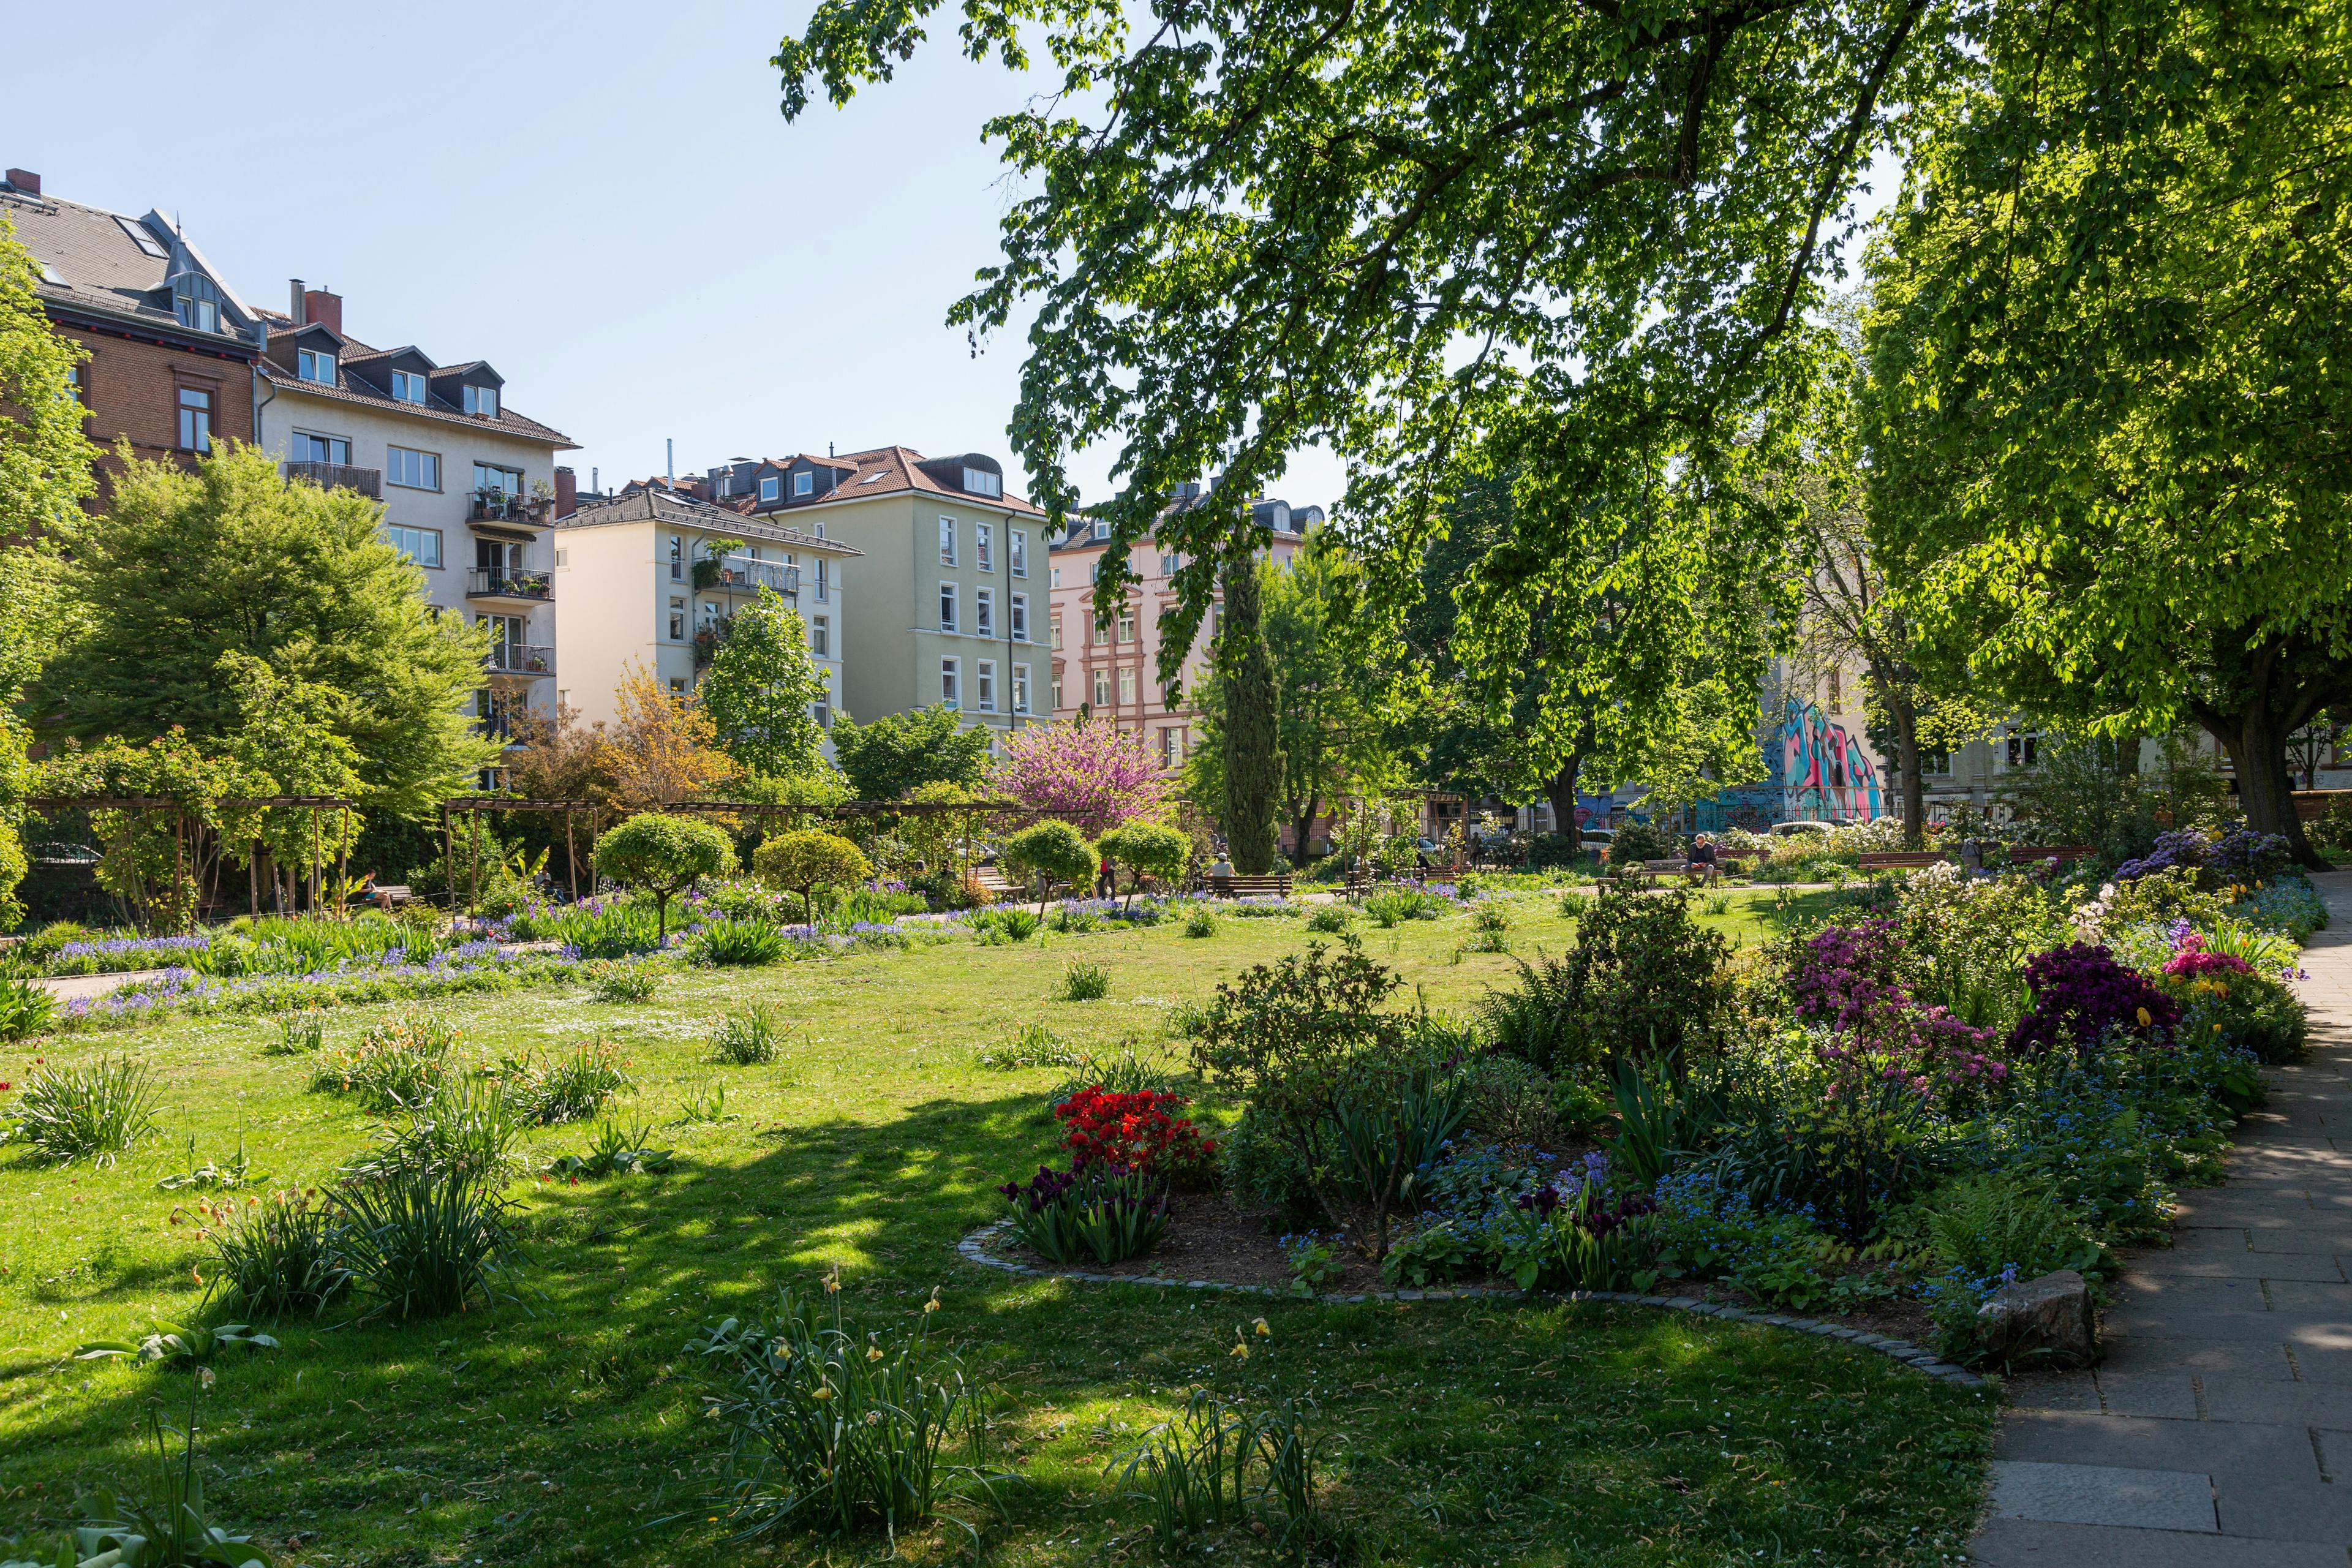 Ein grüner Park mit blühenden Blumen und Bäumen. Im Hintergrund sieht man bunte Häuser einer Stadt.